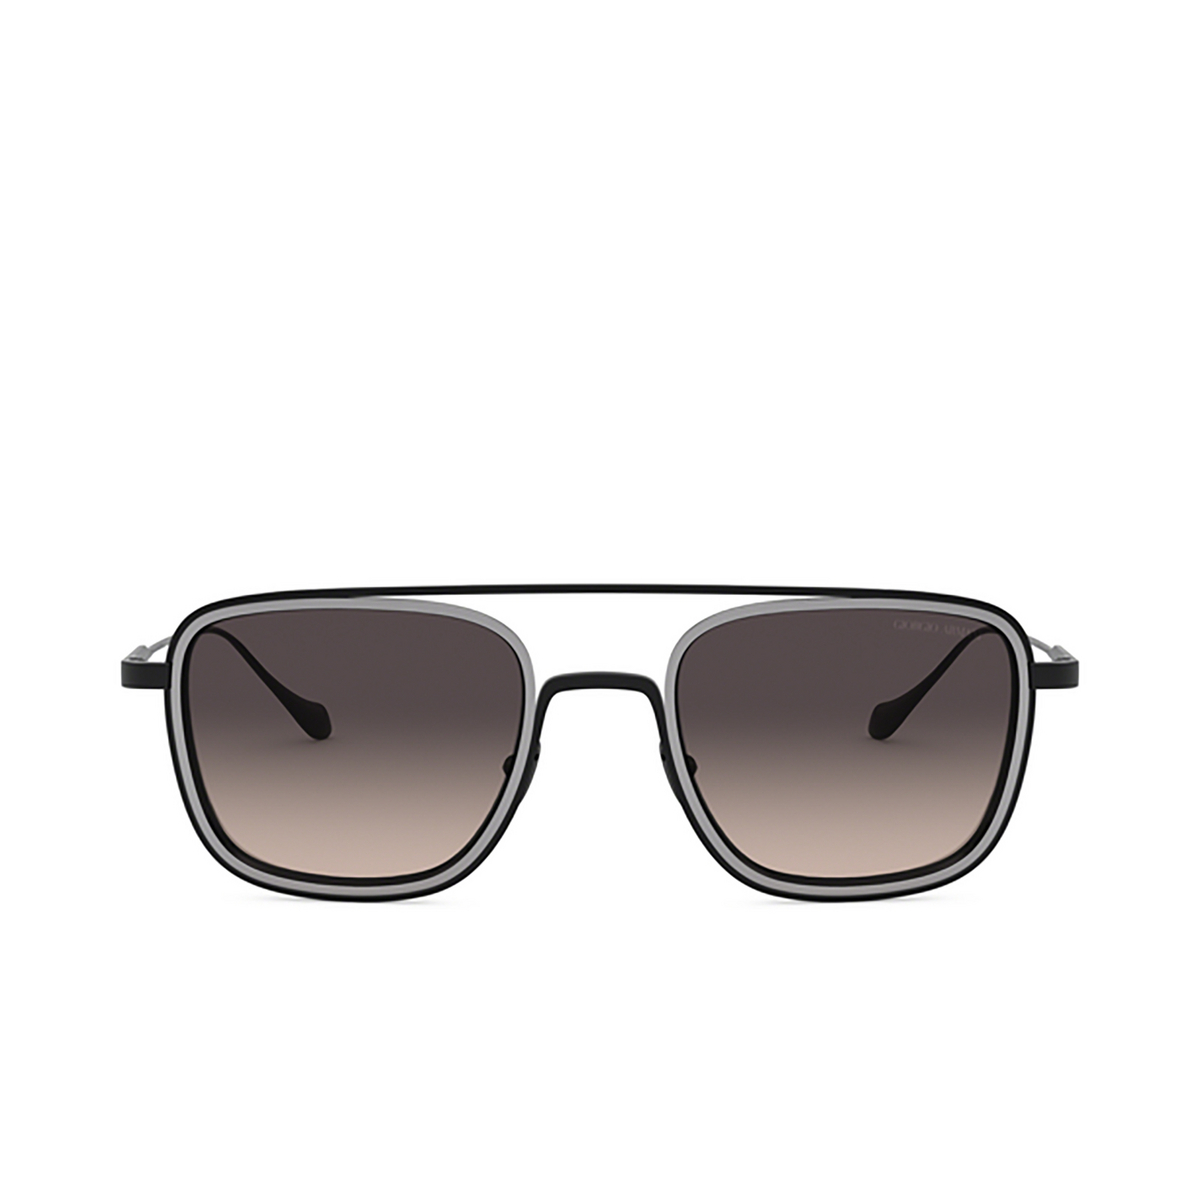 Giorgio Armani AR6086 Sunglasses 326111 MATTE BLACK / GUNMETAL - front view